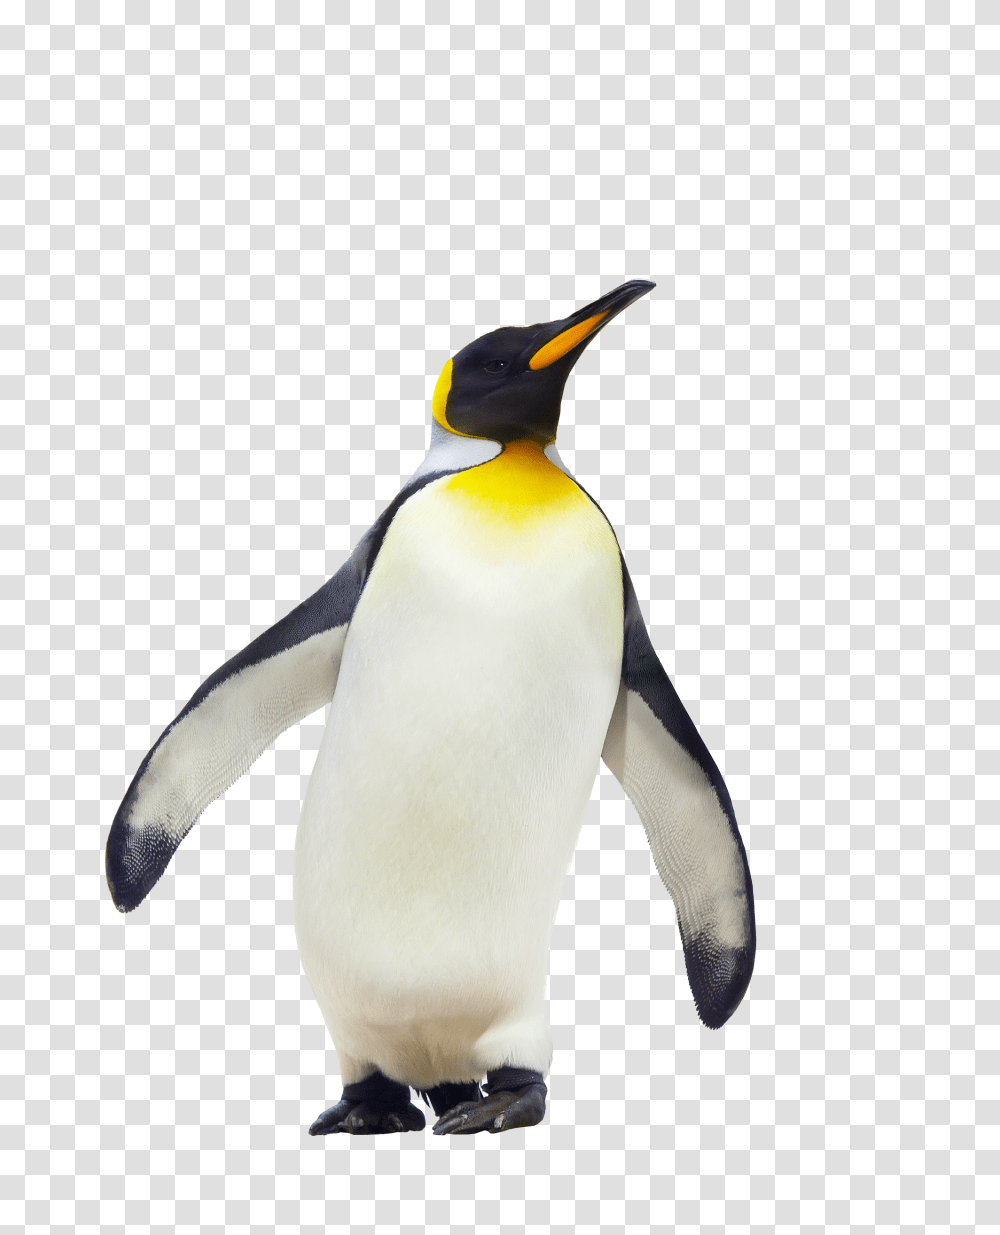 Penguin Walking Image, King Penguin, Bird, Animal Transparent Png